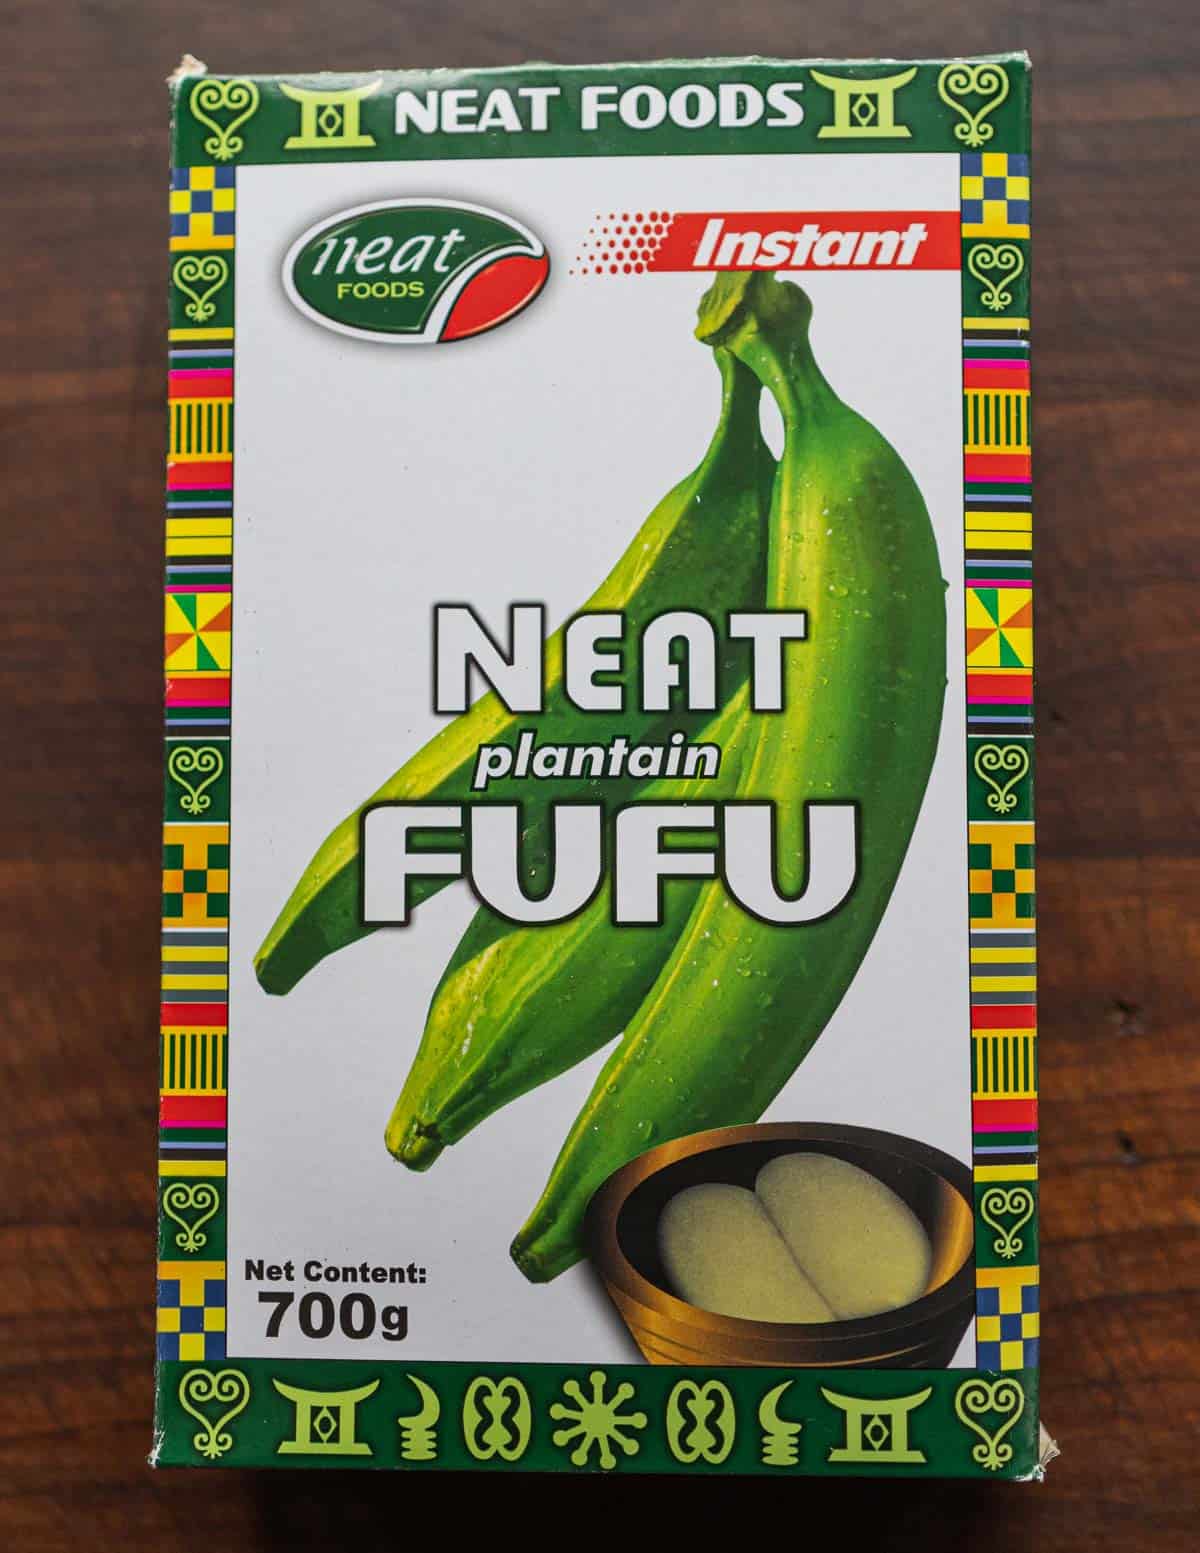 A box of plantain fufu corn flour.